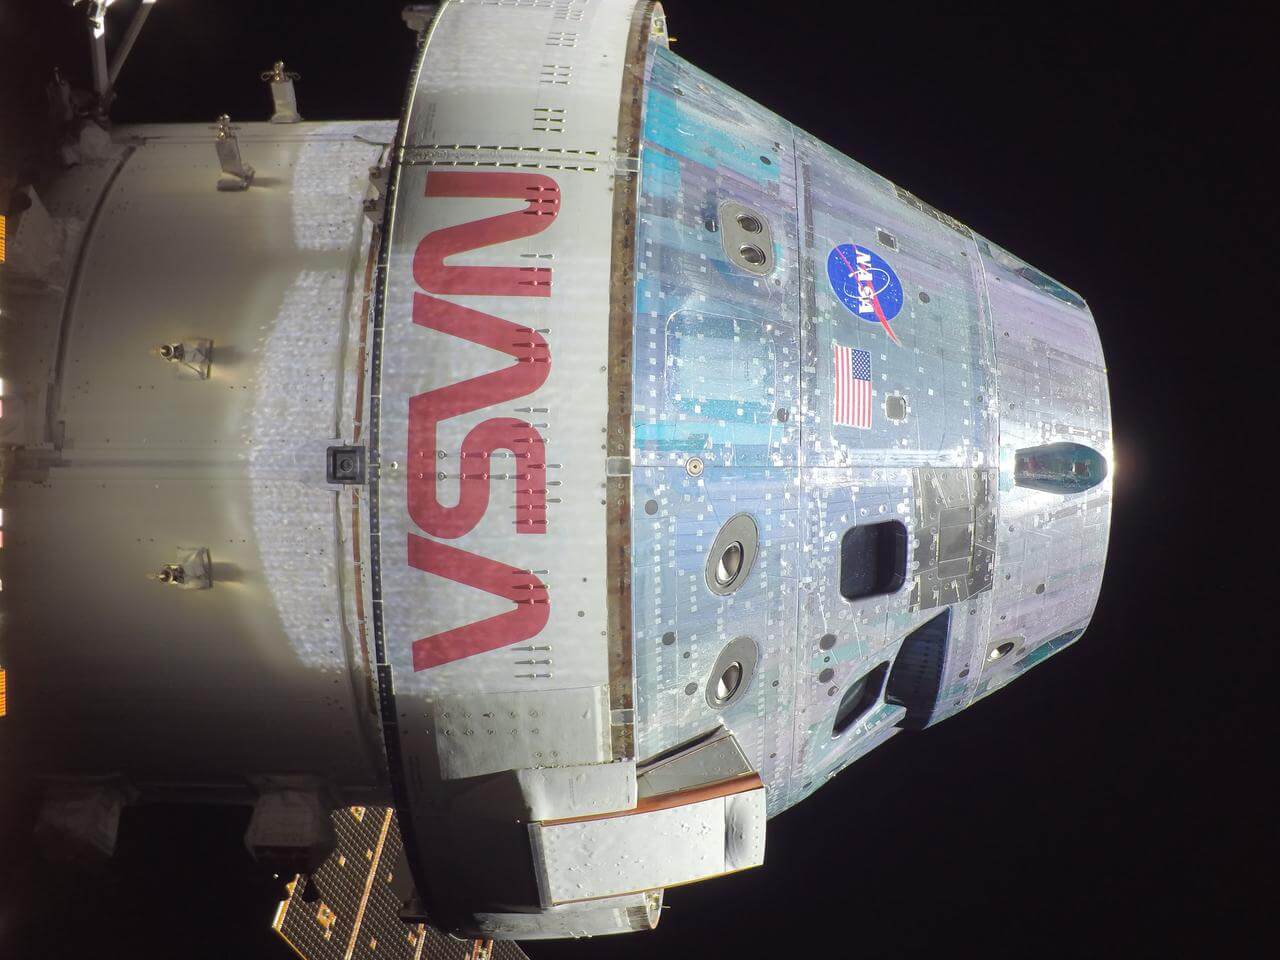 תמונת "סלפי" של קפסולת אוריון במשימת ארטמיס 1, שצולמה בעת בדיקה שגרתית של החללית ביום השלישי למסעה - 18/11/2022. צילום: נאס"א